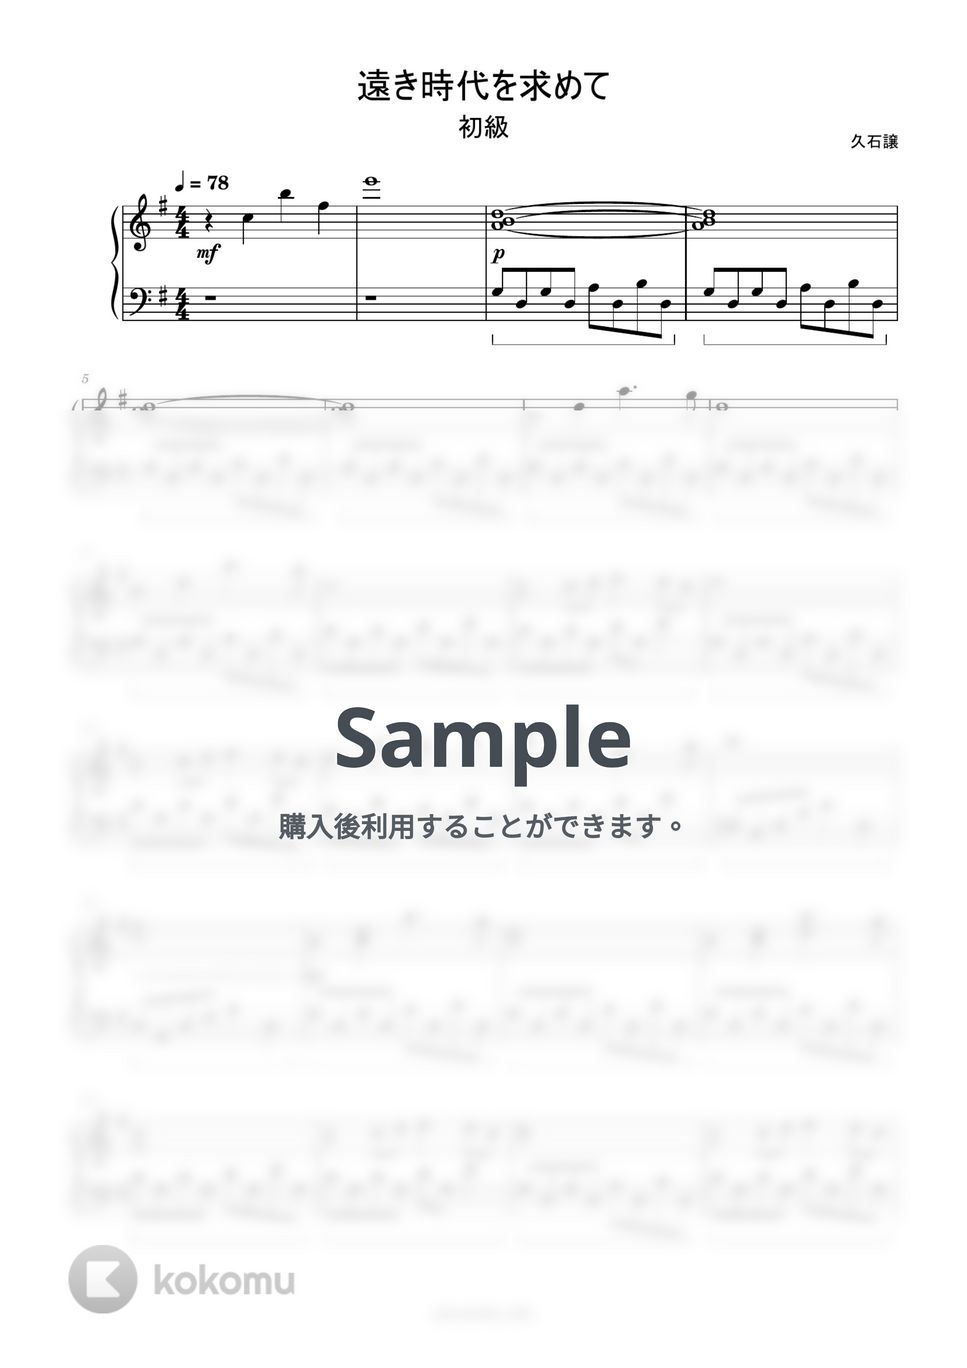 久石譲 - 遠き時代を求めて (簡単楽譜) by ピアノ塾